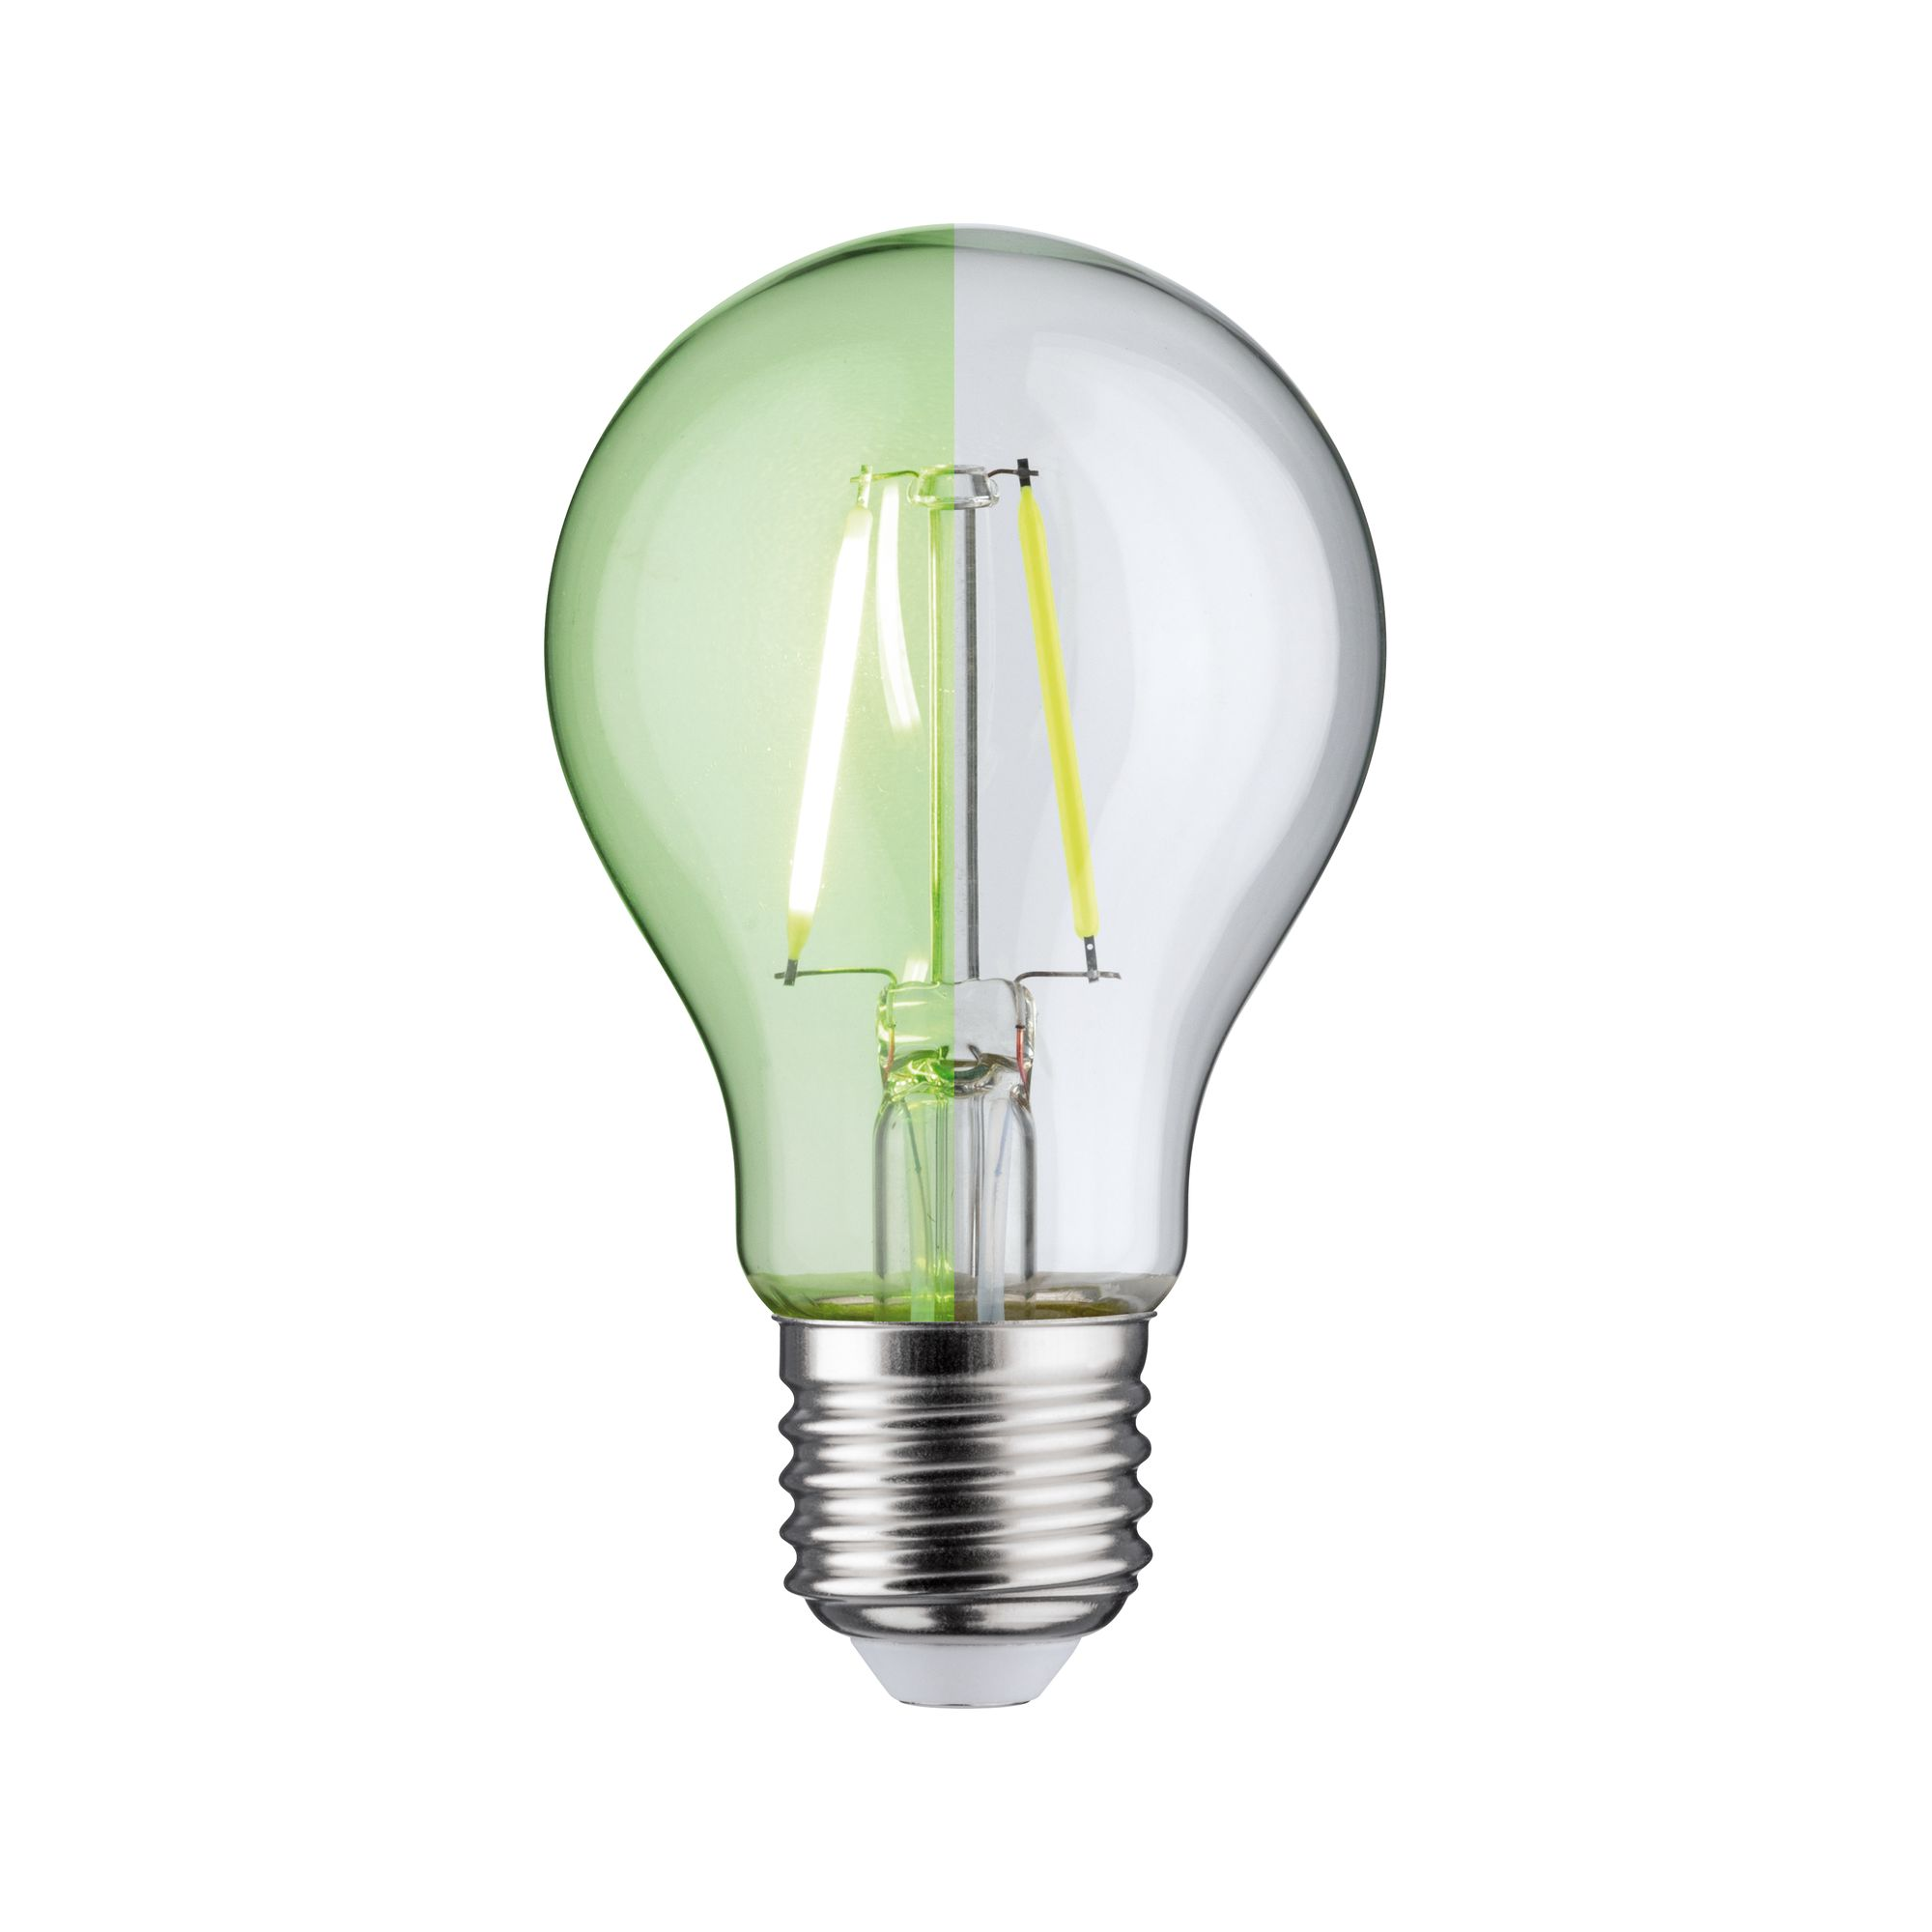 LED-Lampe E27 1,1W 170 lm grün klar + product picture